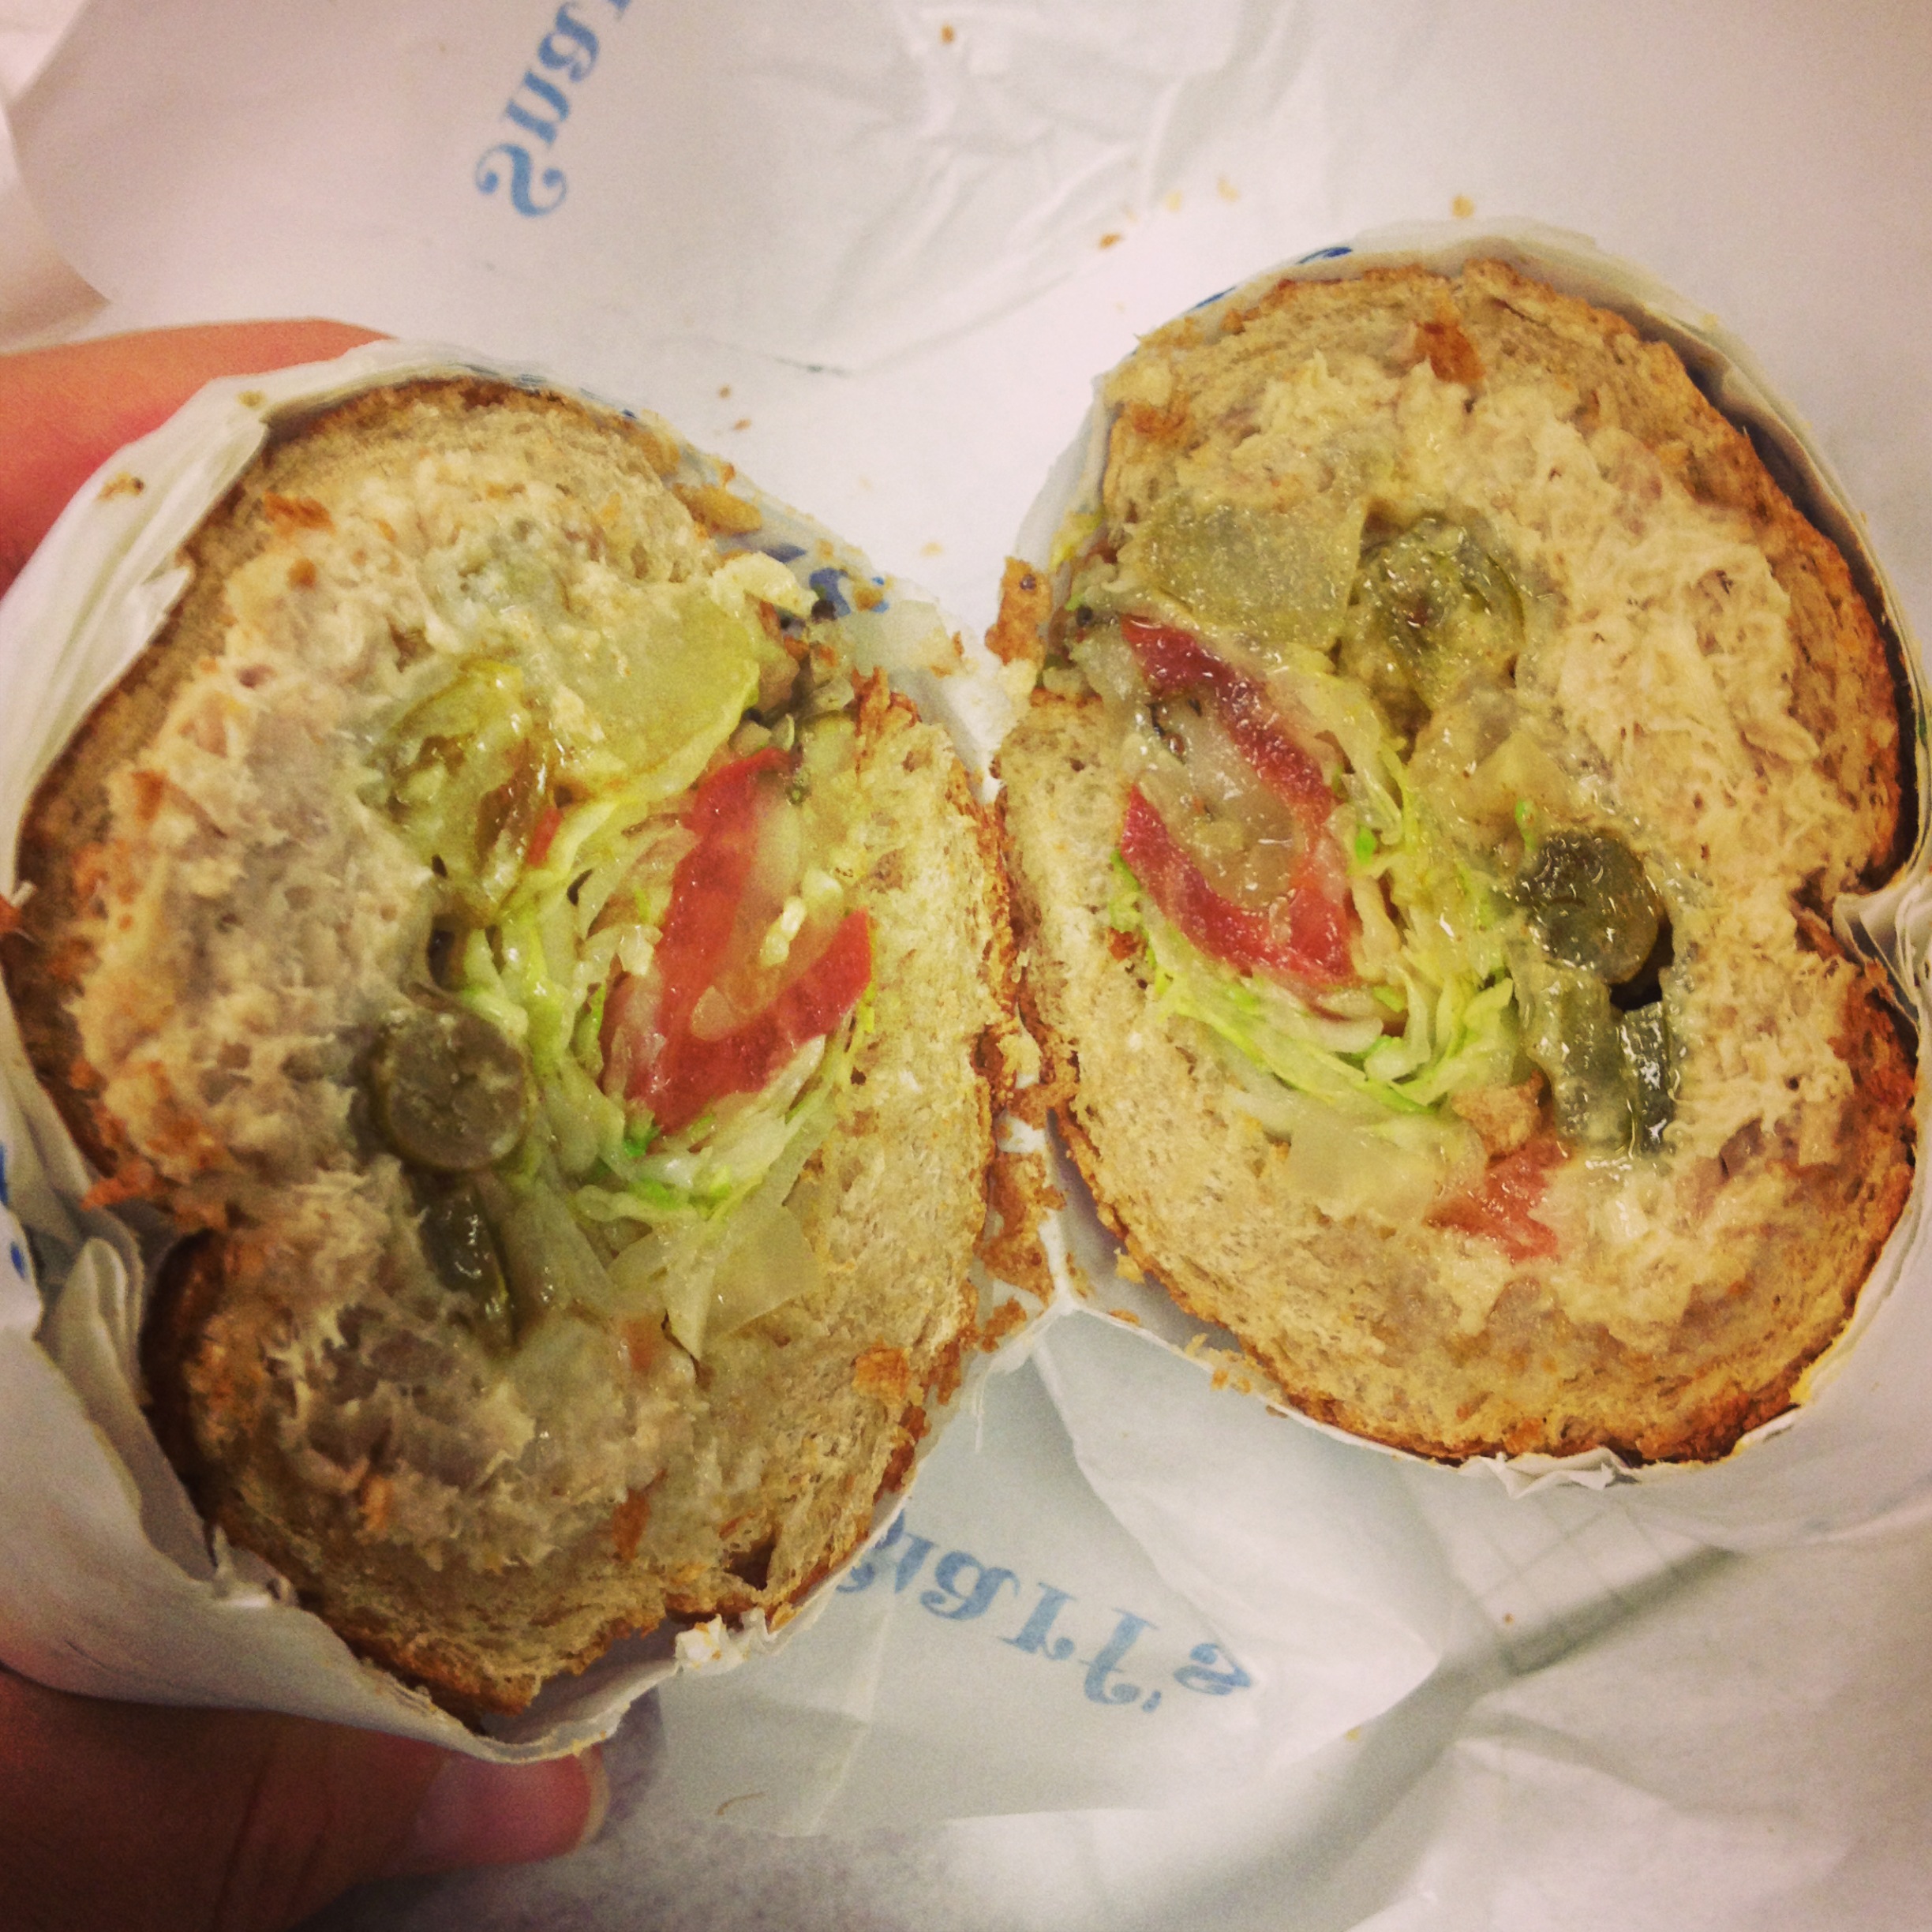 Tuna sandwich...mmmm